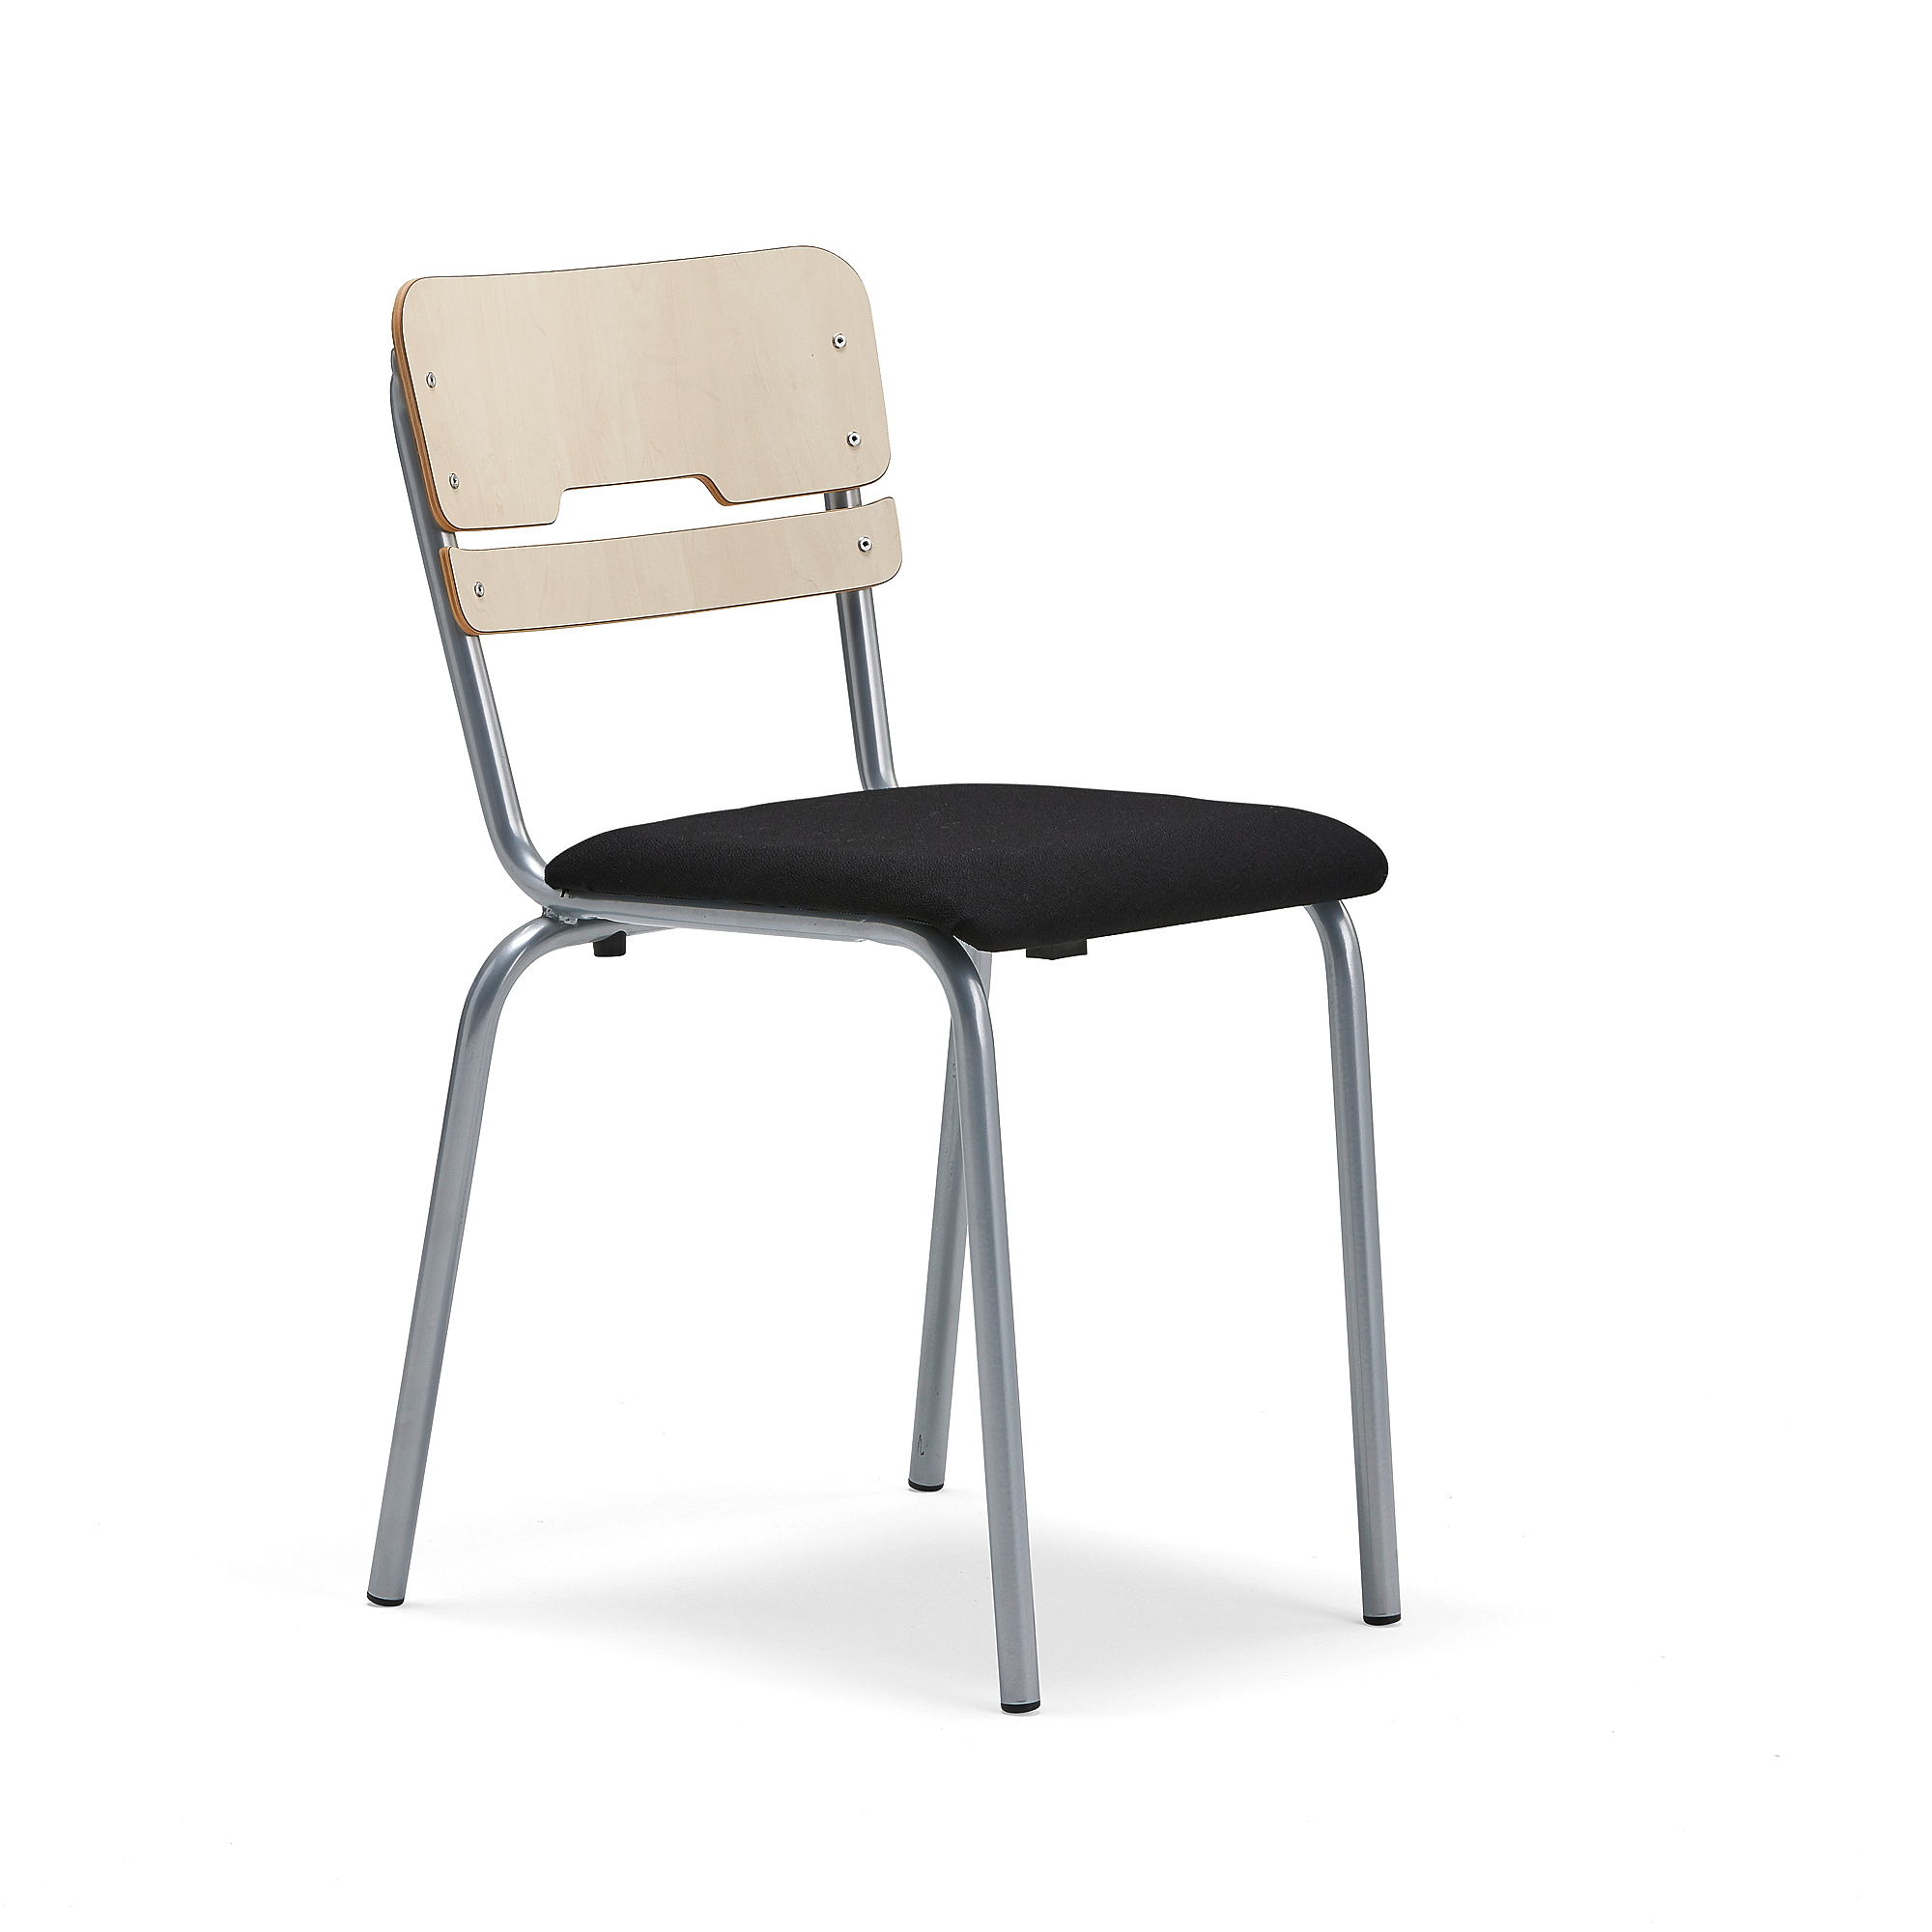 Školní židle SCIENTIA, sedák 390x390 mm, výška 460 mm, bříza, černý potah